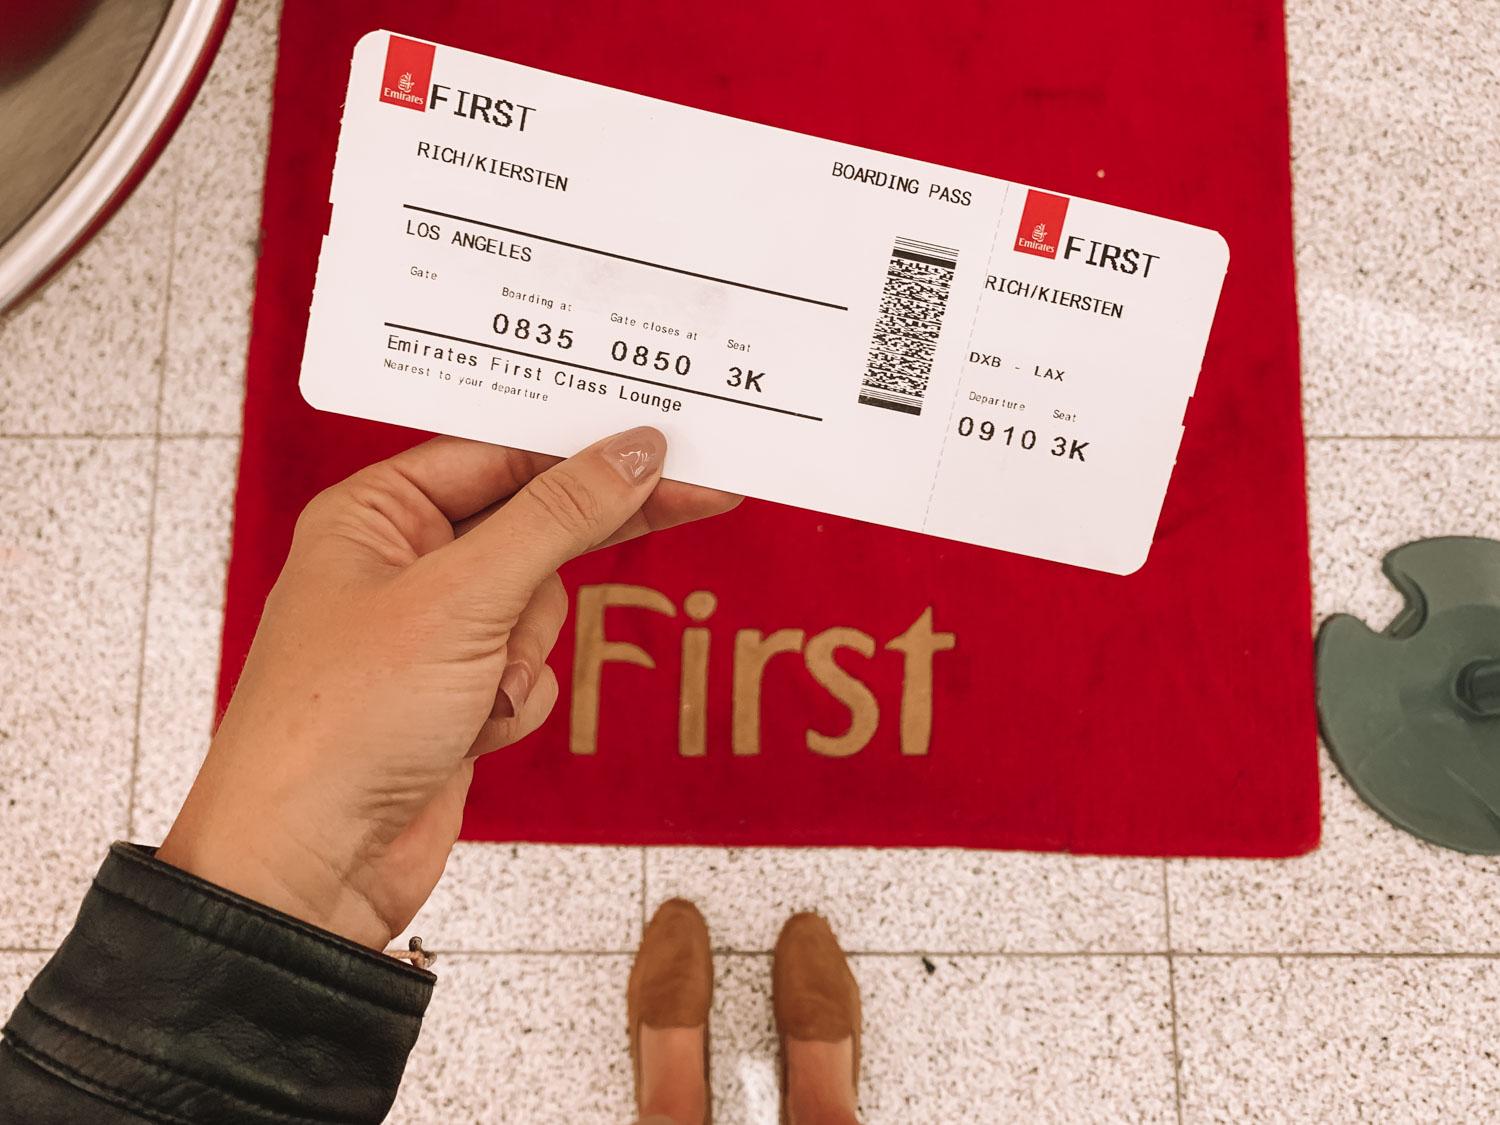 Emirates First Class Boarding Pass